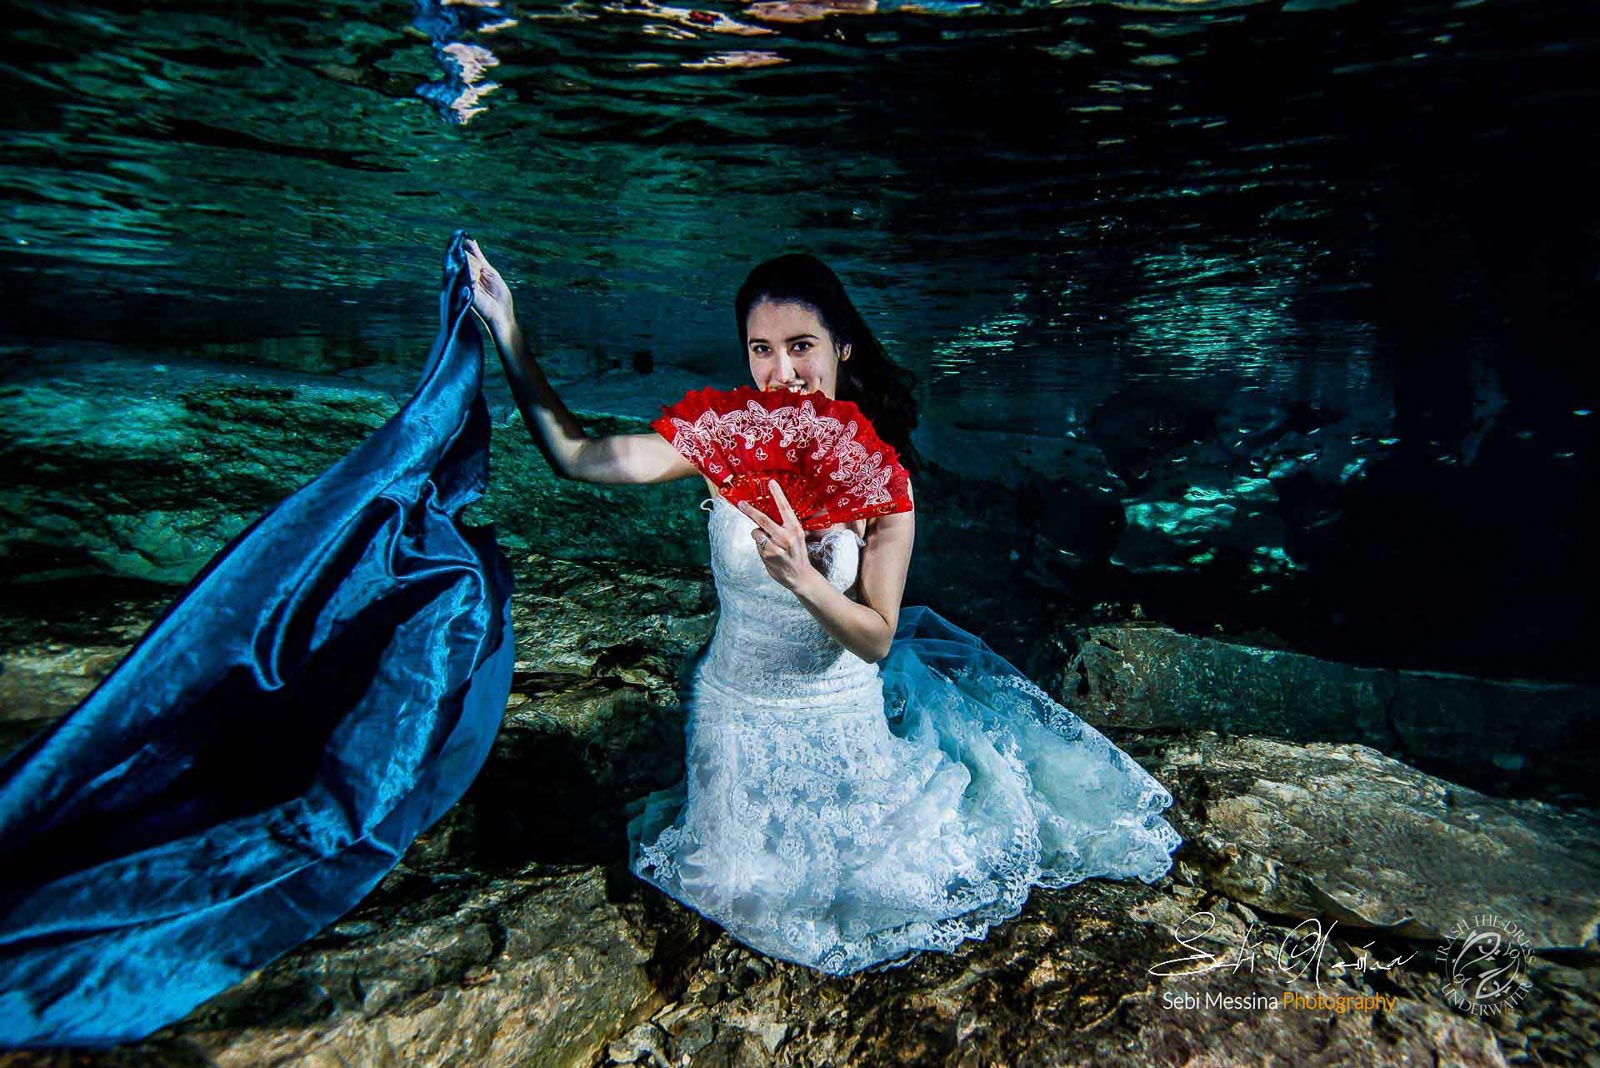 Trash The Dress in Mexico – Sebi Messina Photography